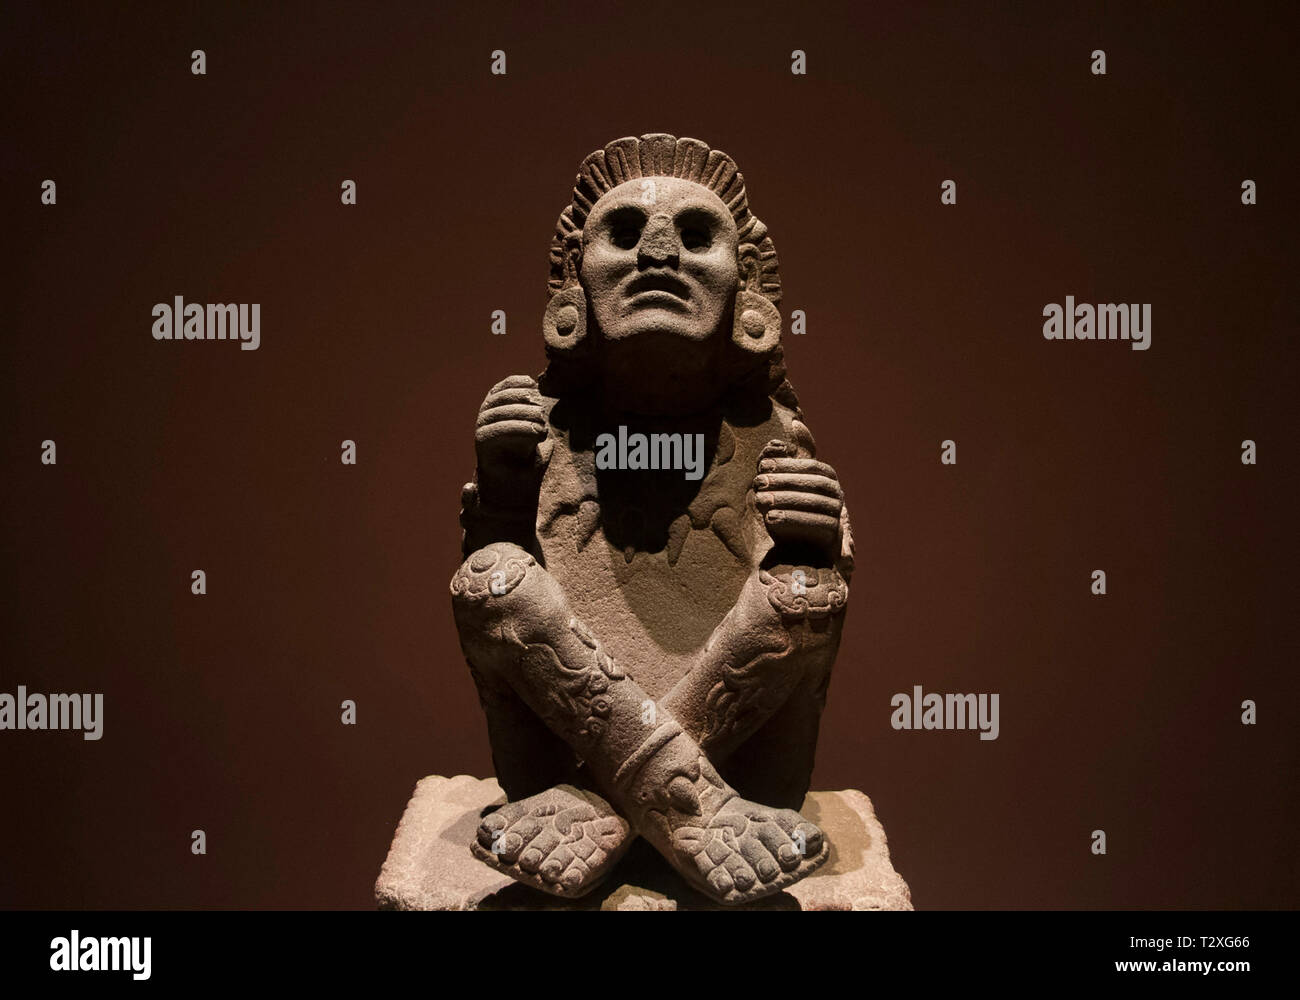 La ville de Mexico : statue en pierre de Xochipilli, dieu de l'art, des jeux, de la beauté, de la danse, les fleurs et le chant dans la mythologie aztèque. Banque D'Images